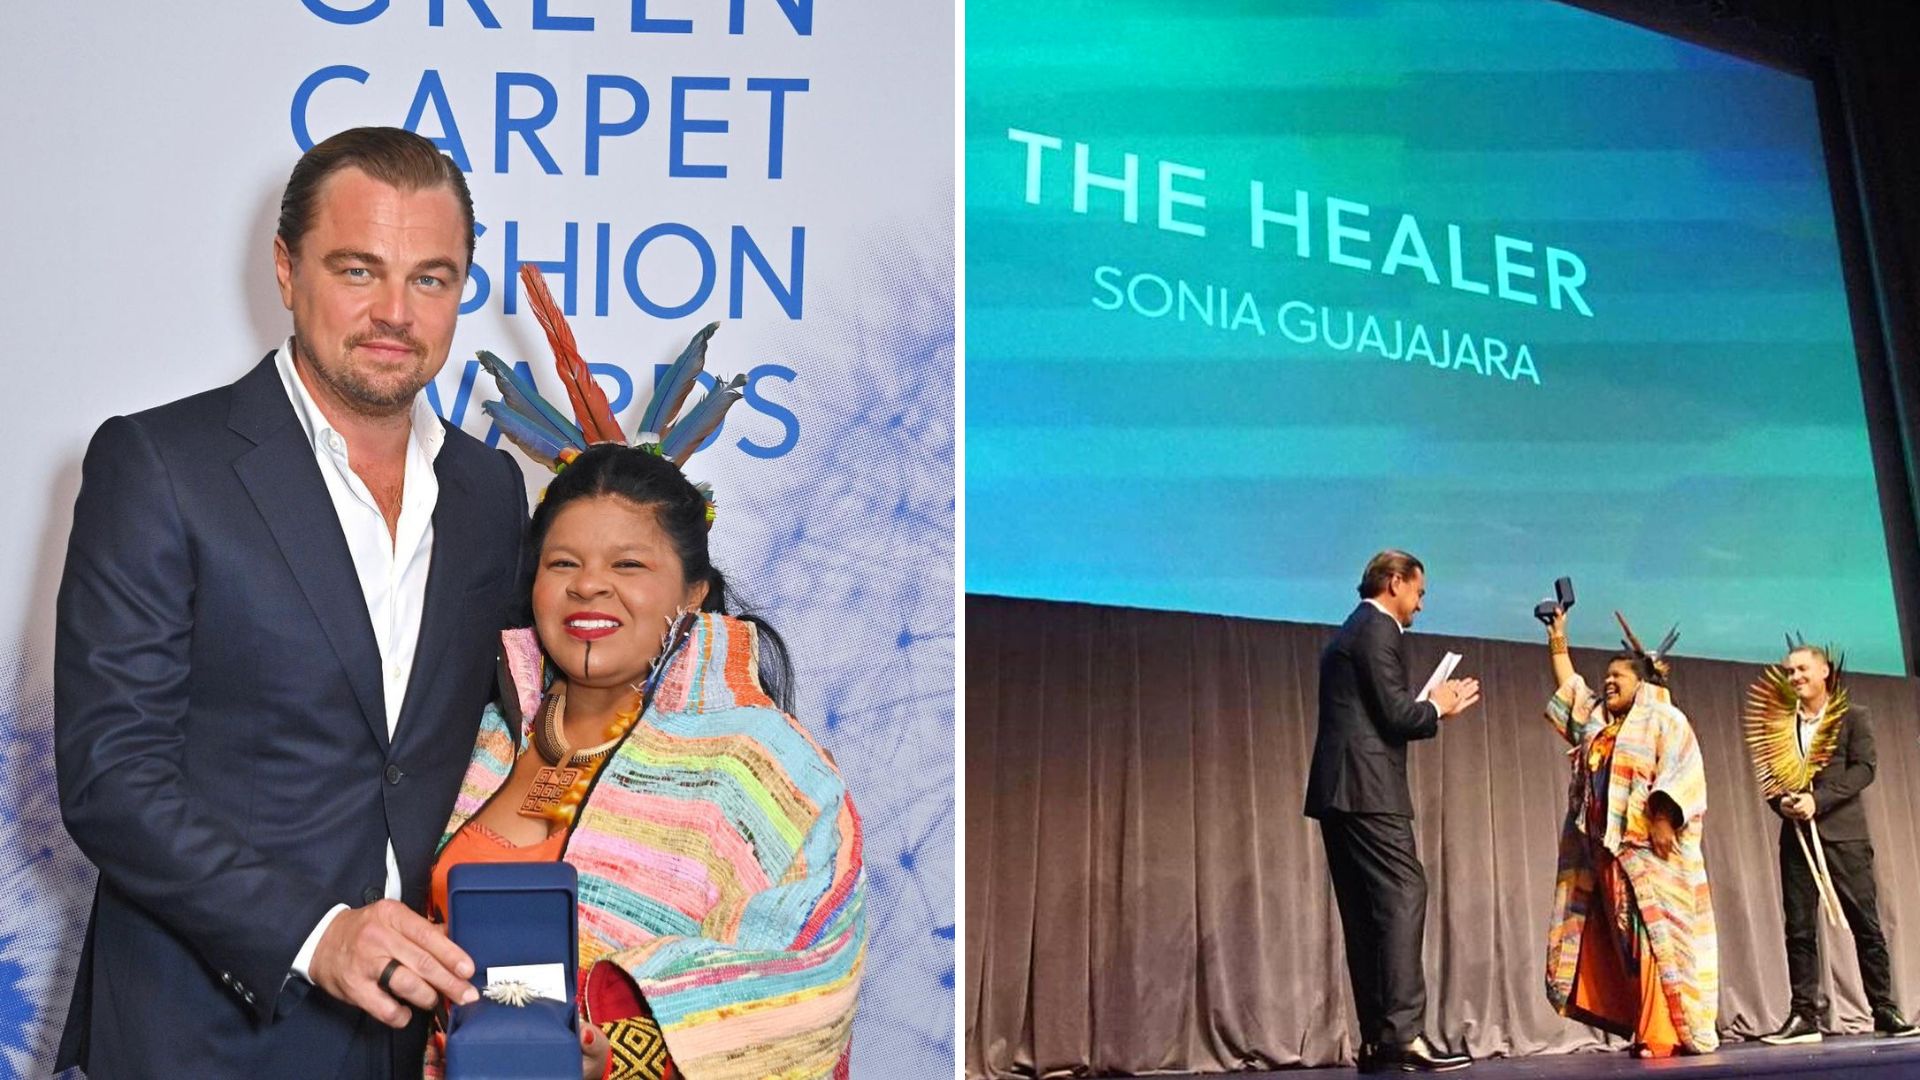 Ministra dos Povos Indígenas recebeu prêmio 'The Healer' - Foto: Reprodução/Instagram @ leonardodicaprio @guajajarasonia